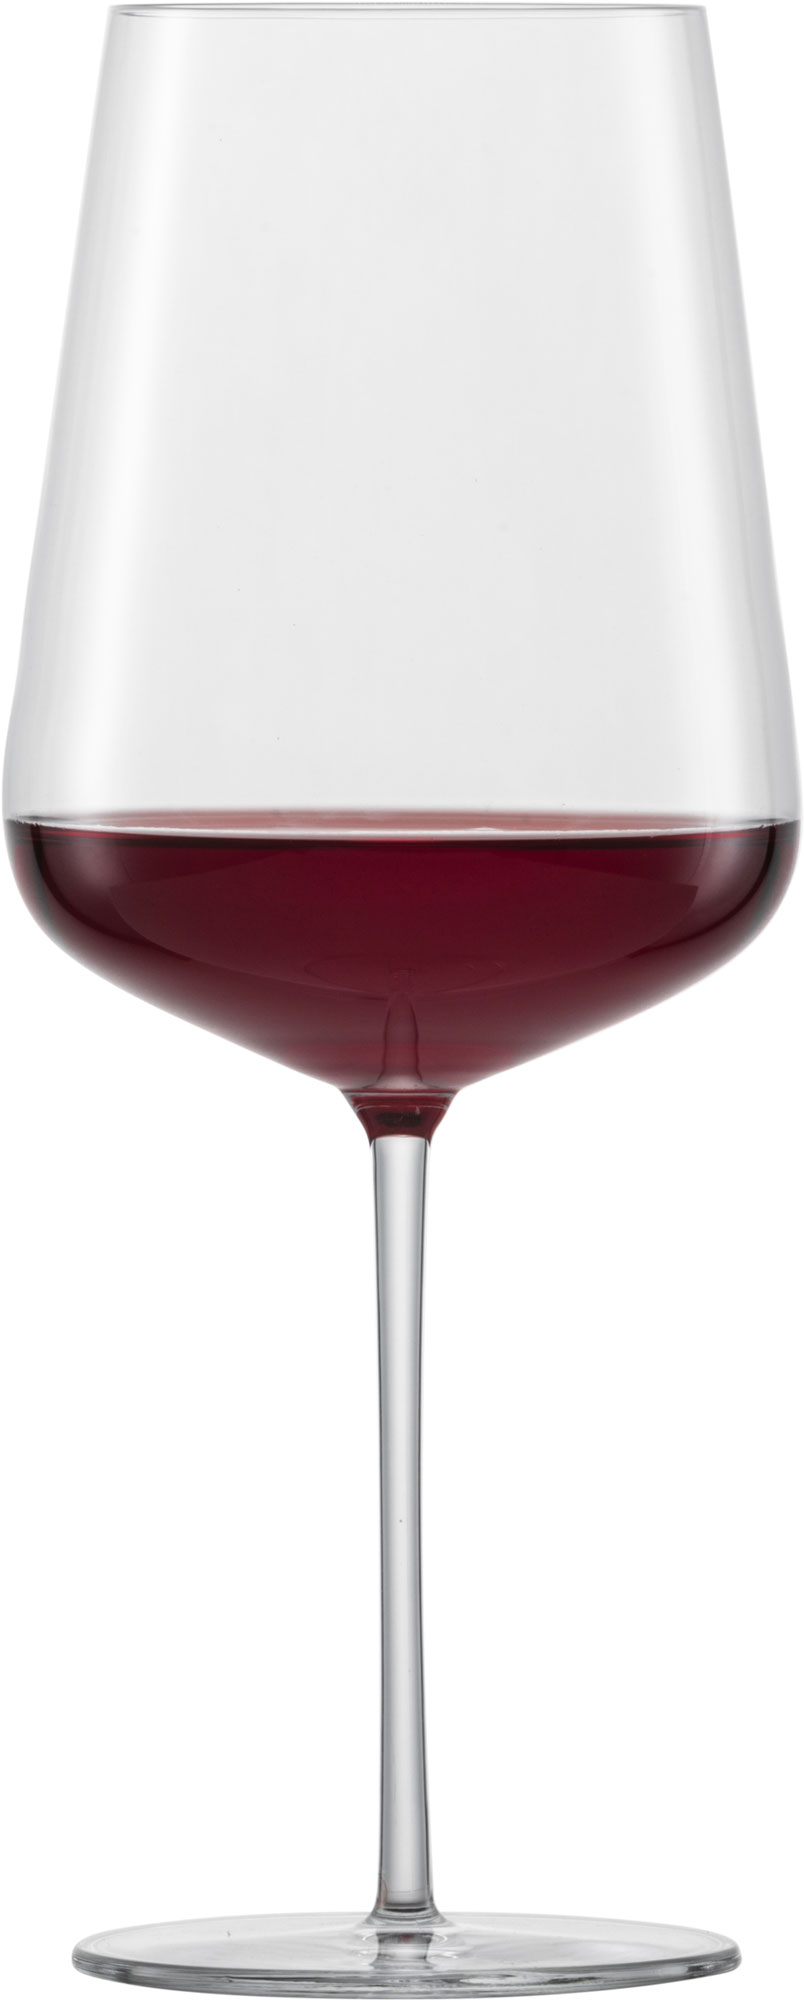 Bordeaux glass Verbelle, Zwiesel Glas - 742ml (1 pc.)